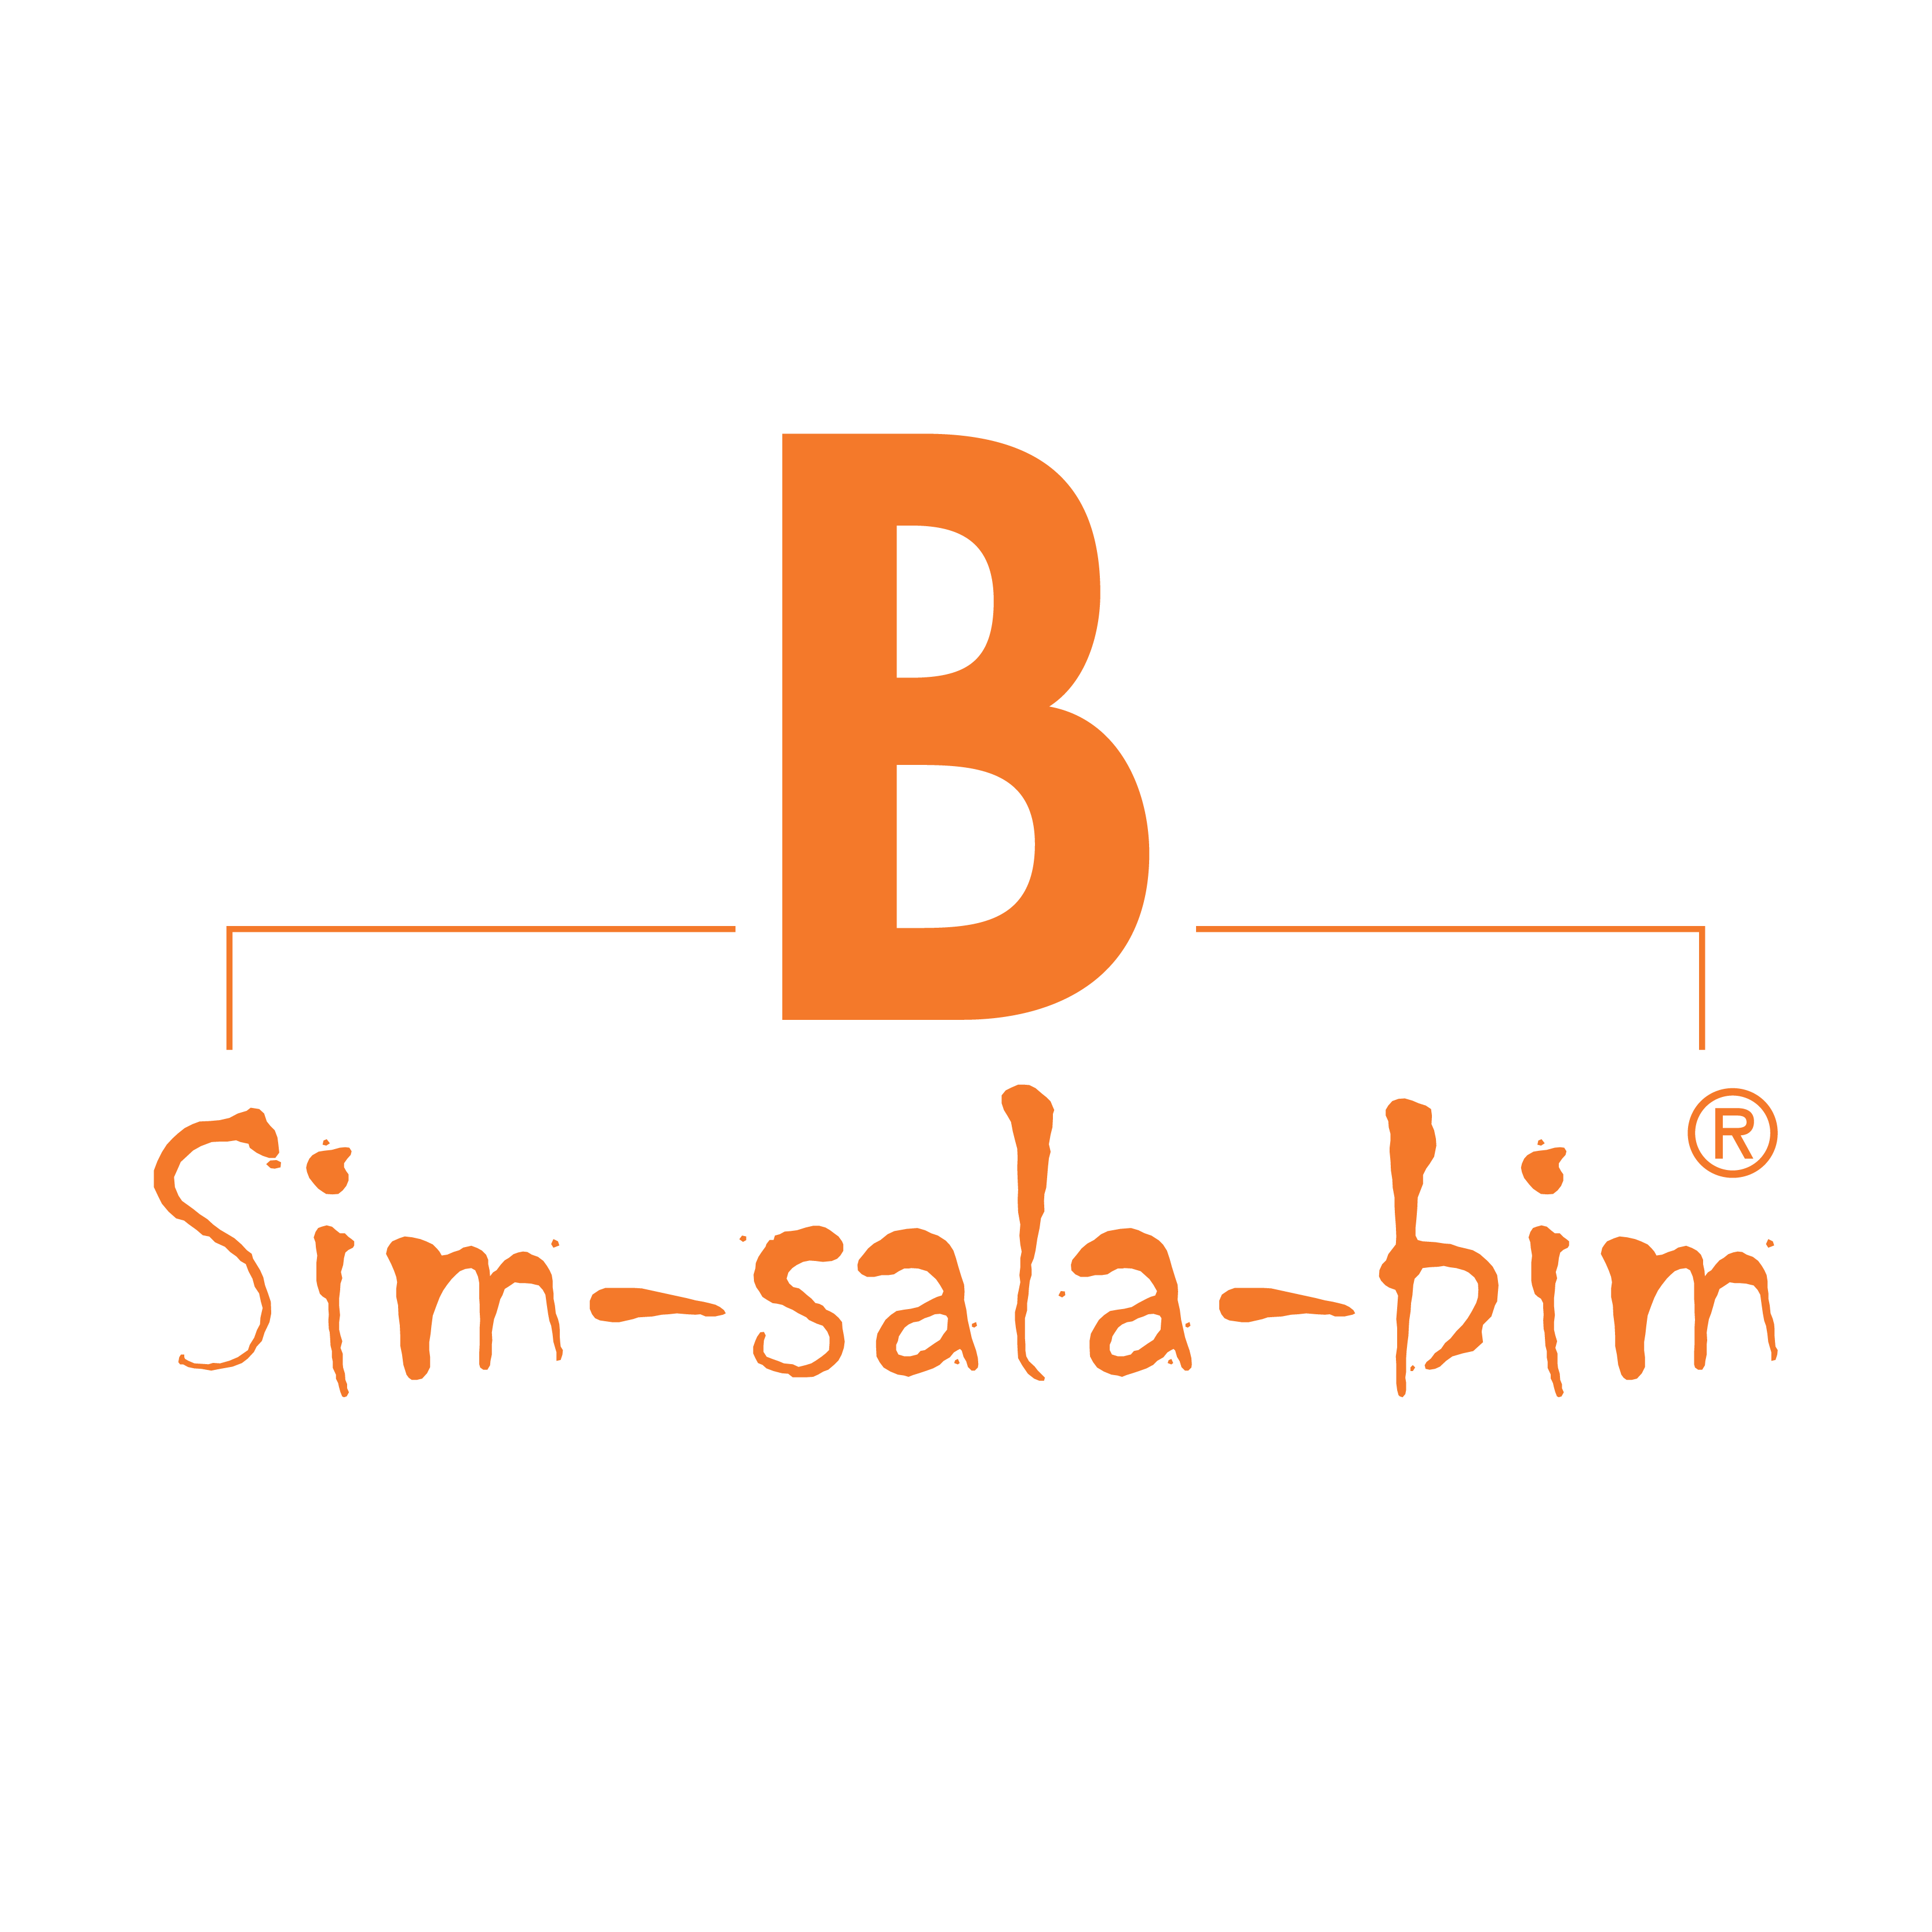 Sim-sala-bim Kollektion - Brillen von Brillenmann